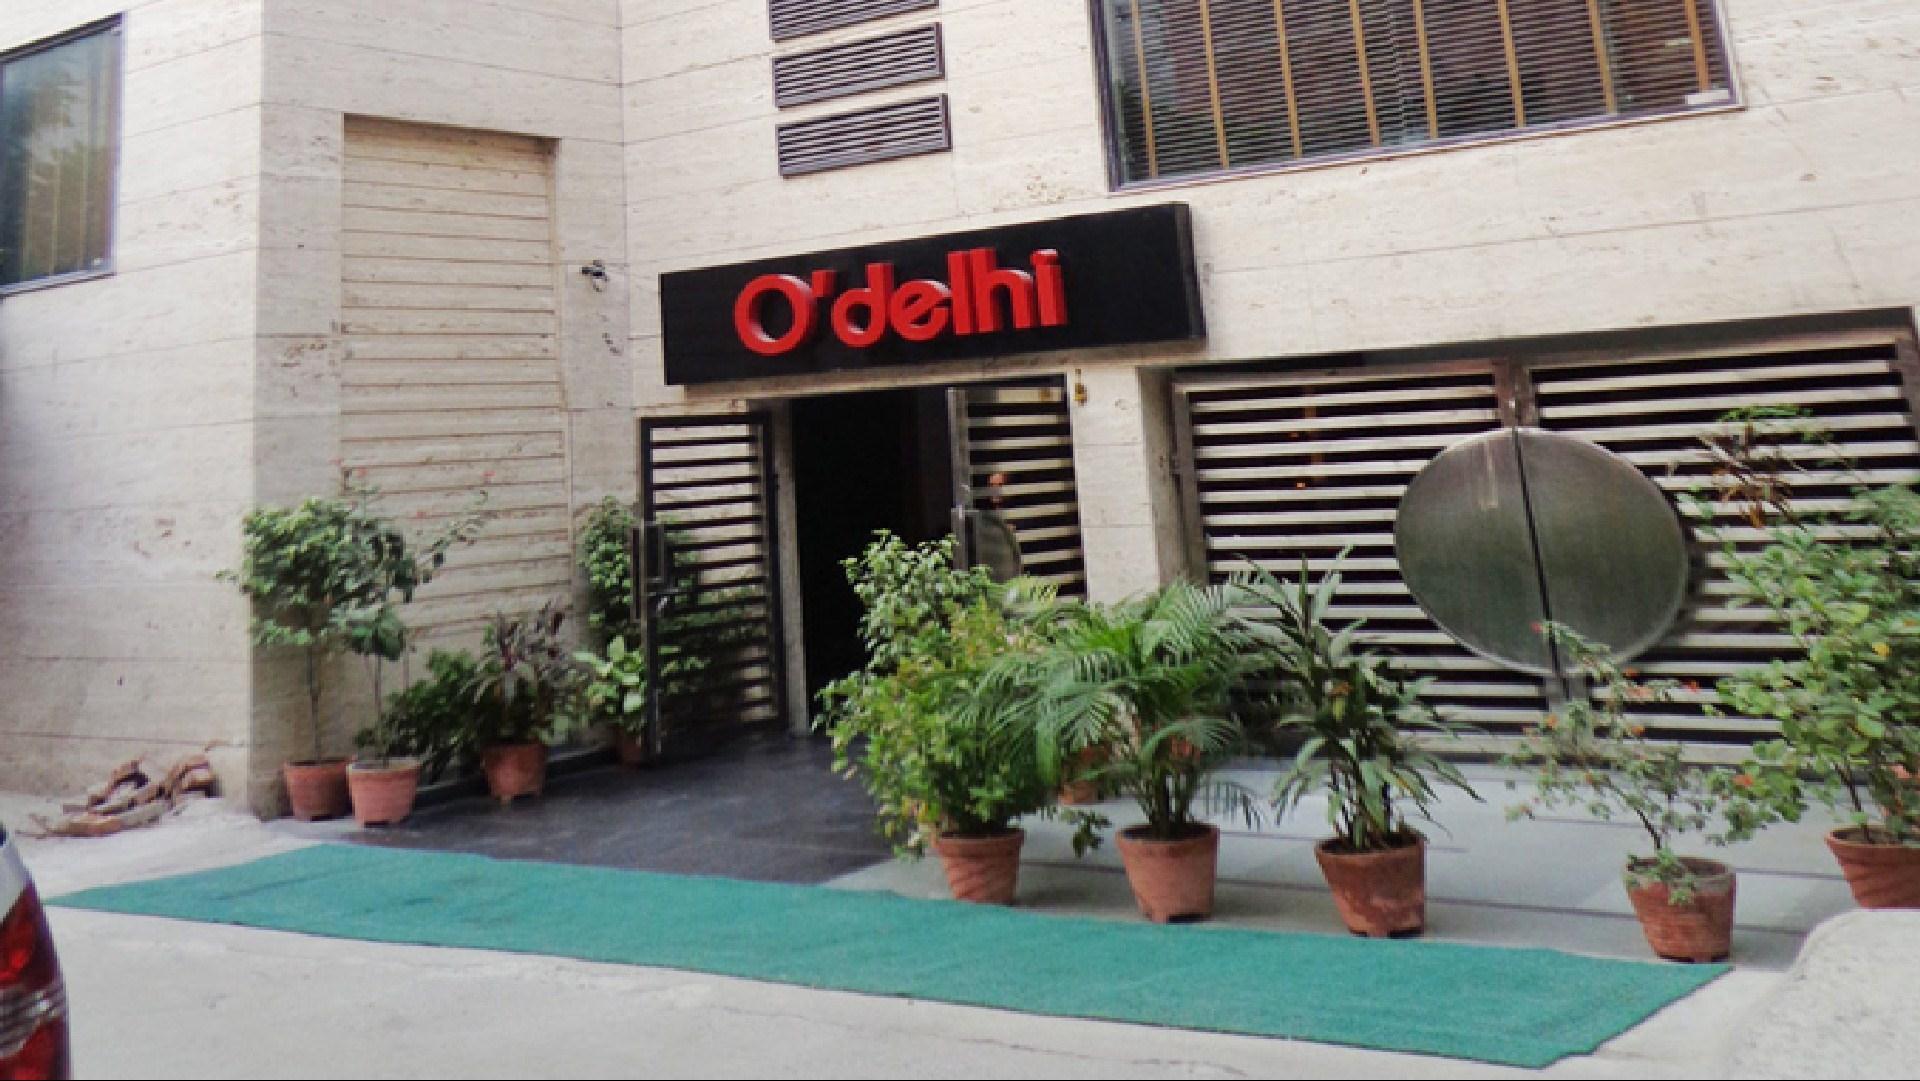 Hotel O'Delhi in New Delhi, IN